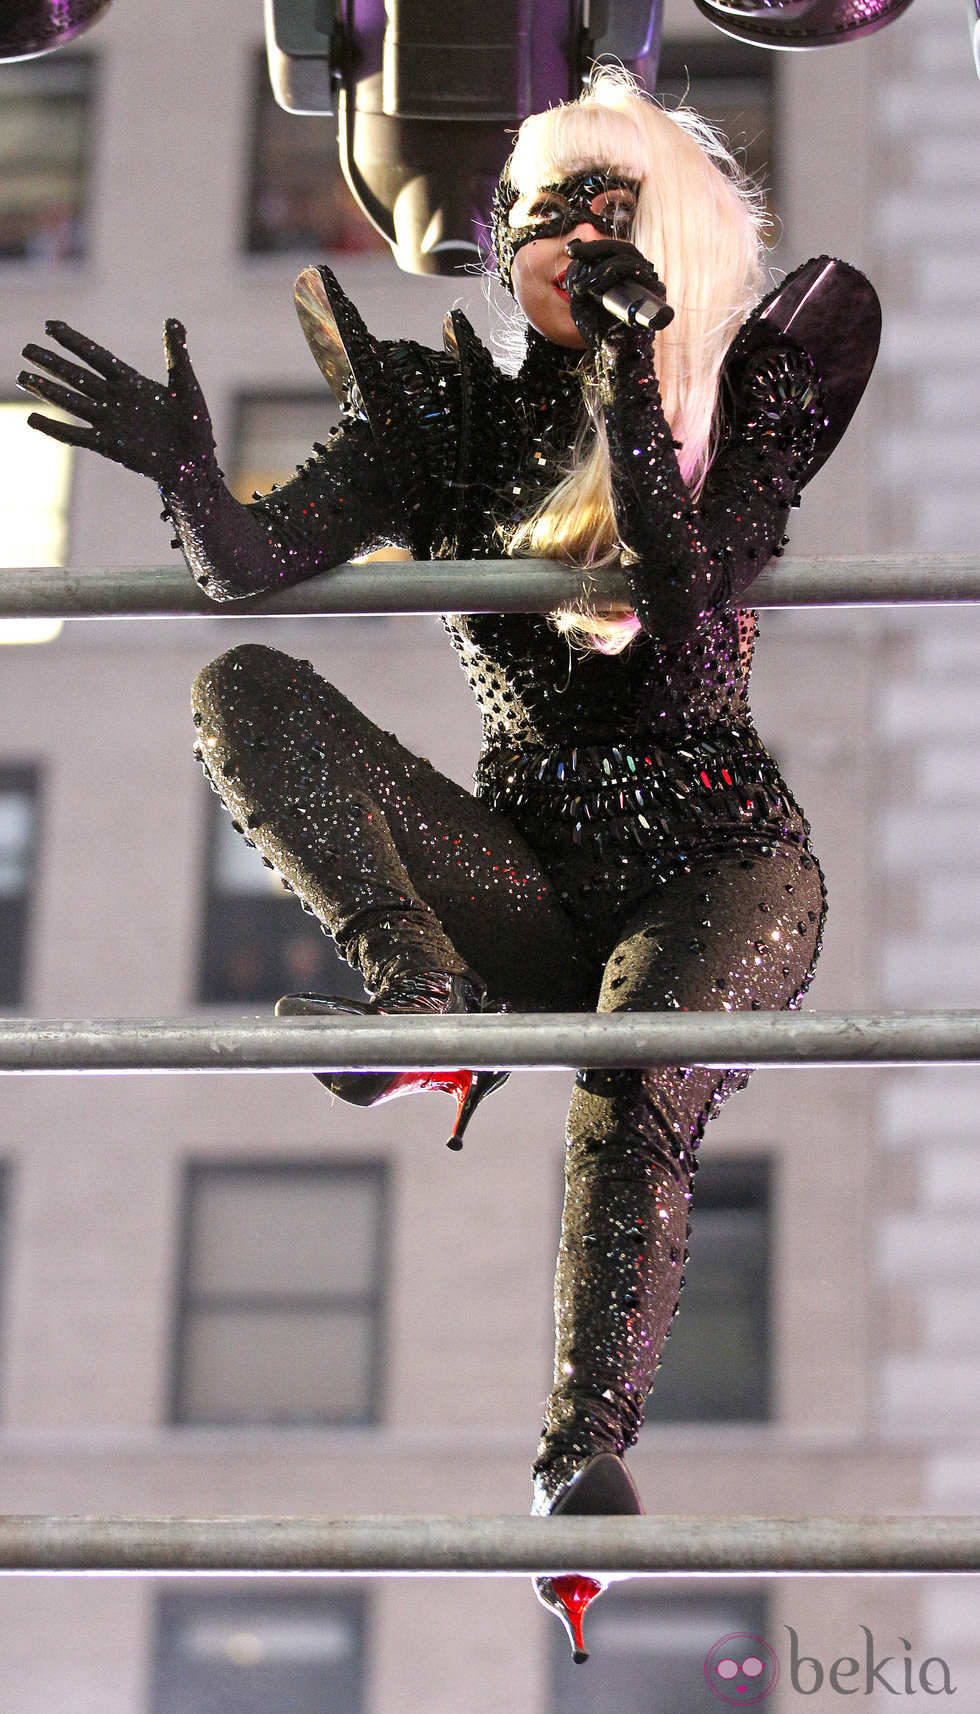 Lady Gaga recibe el 2012 escalando en su concierto en Times Square